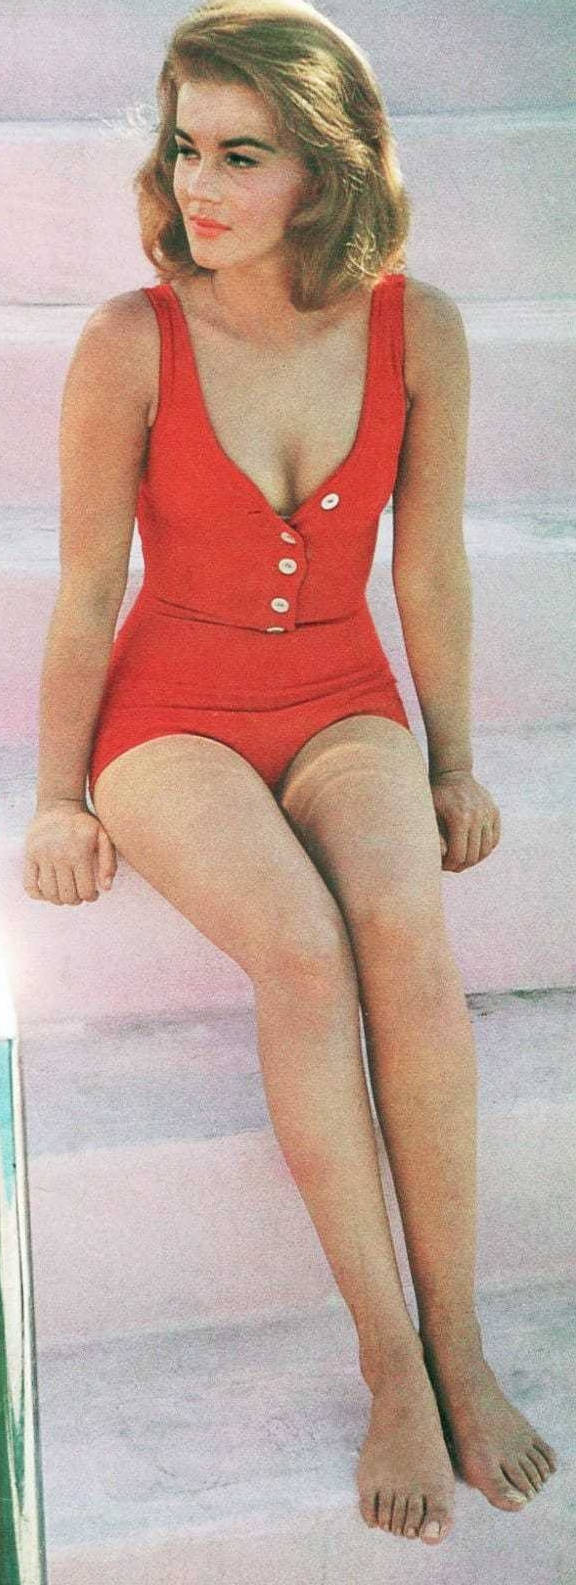 Schwedischamerikanische Berühmtheit Ann Margret Im Badeanzug. Wallpaper